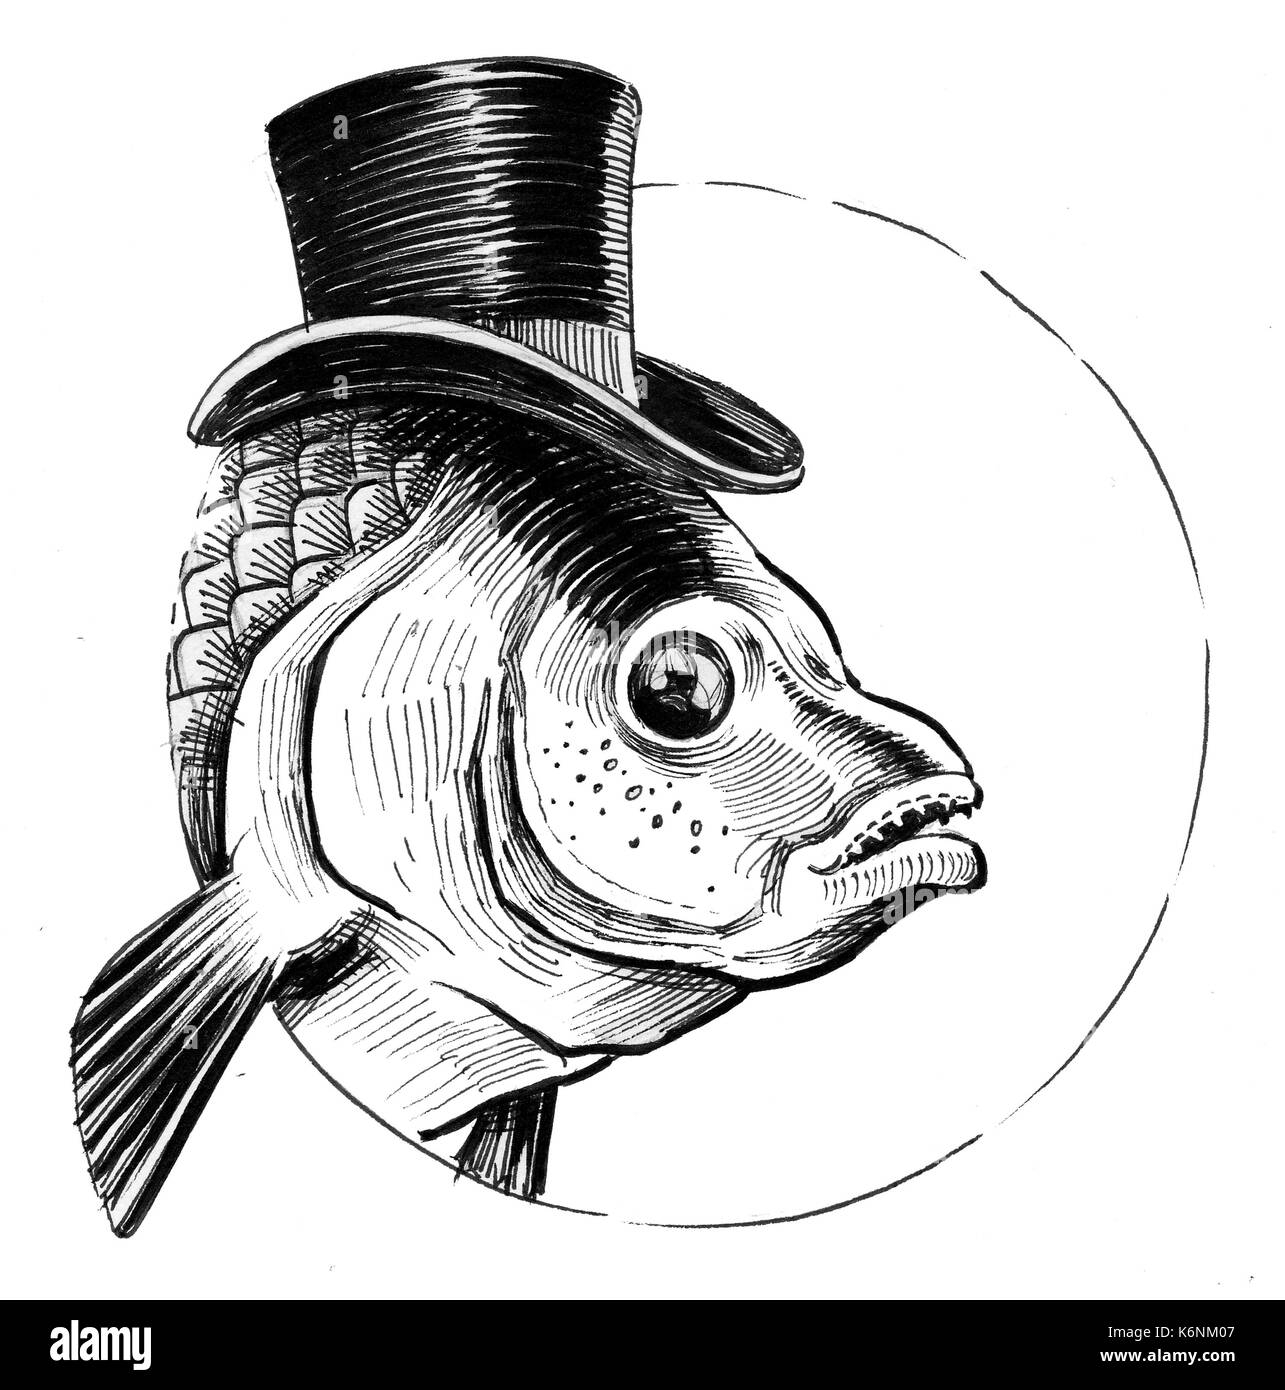 Рыба в шляпе вектор